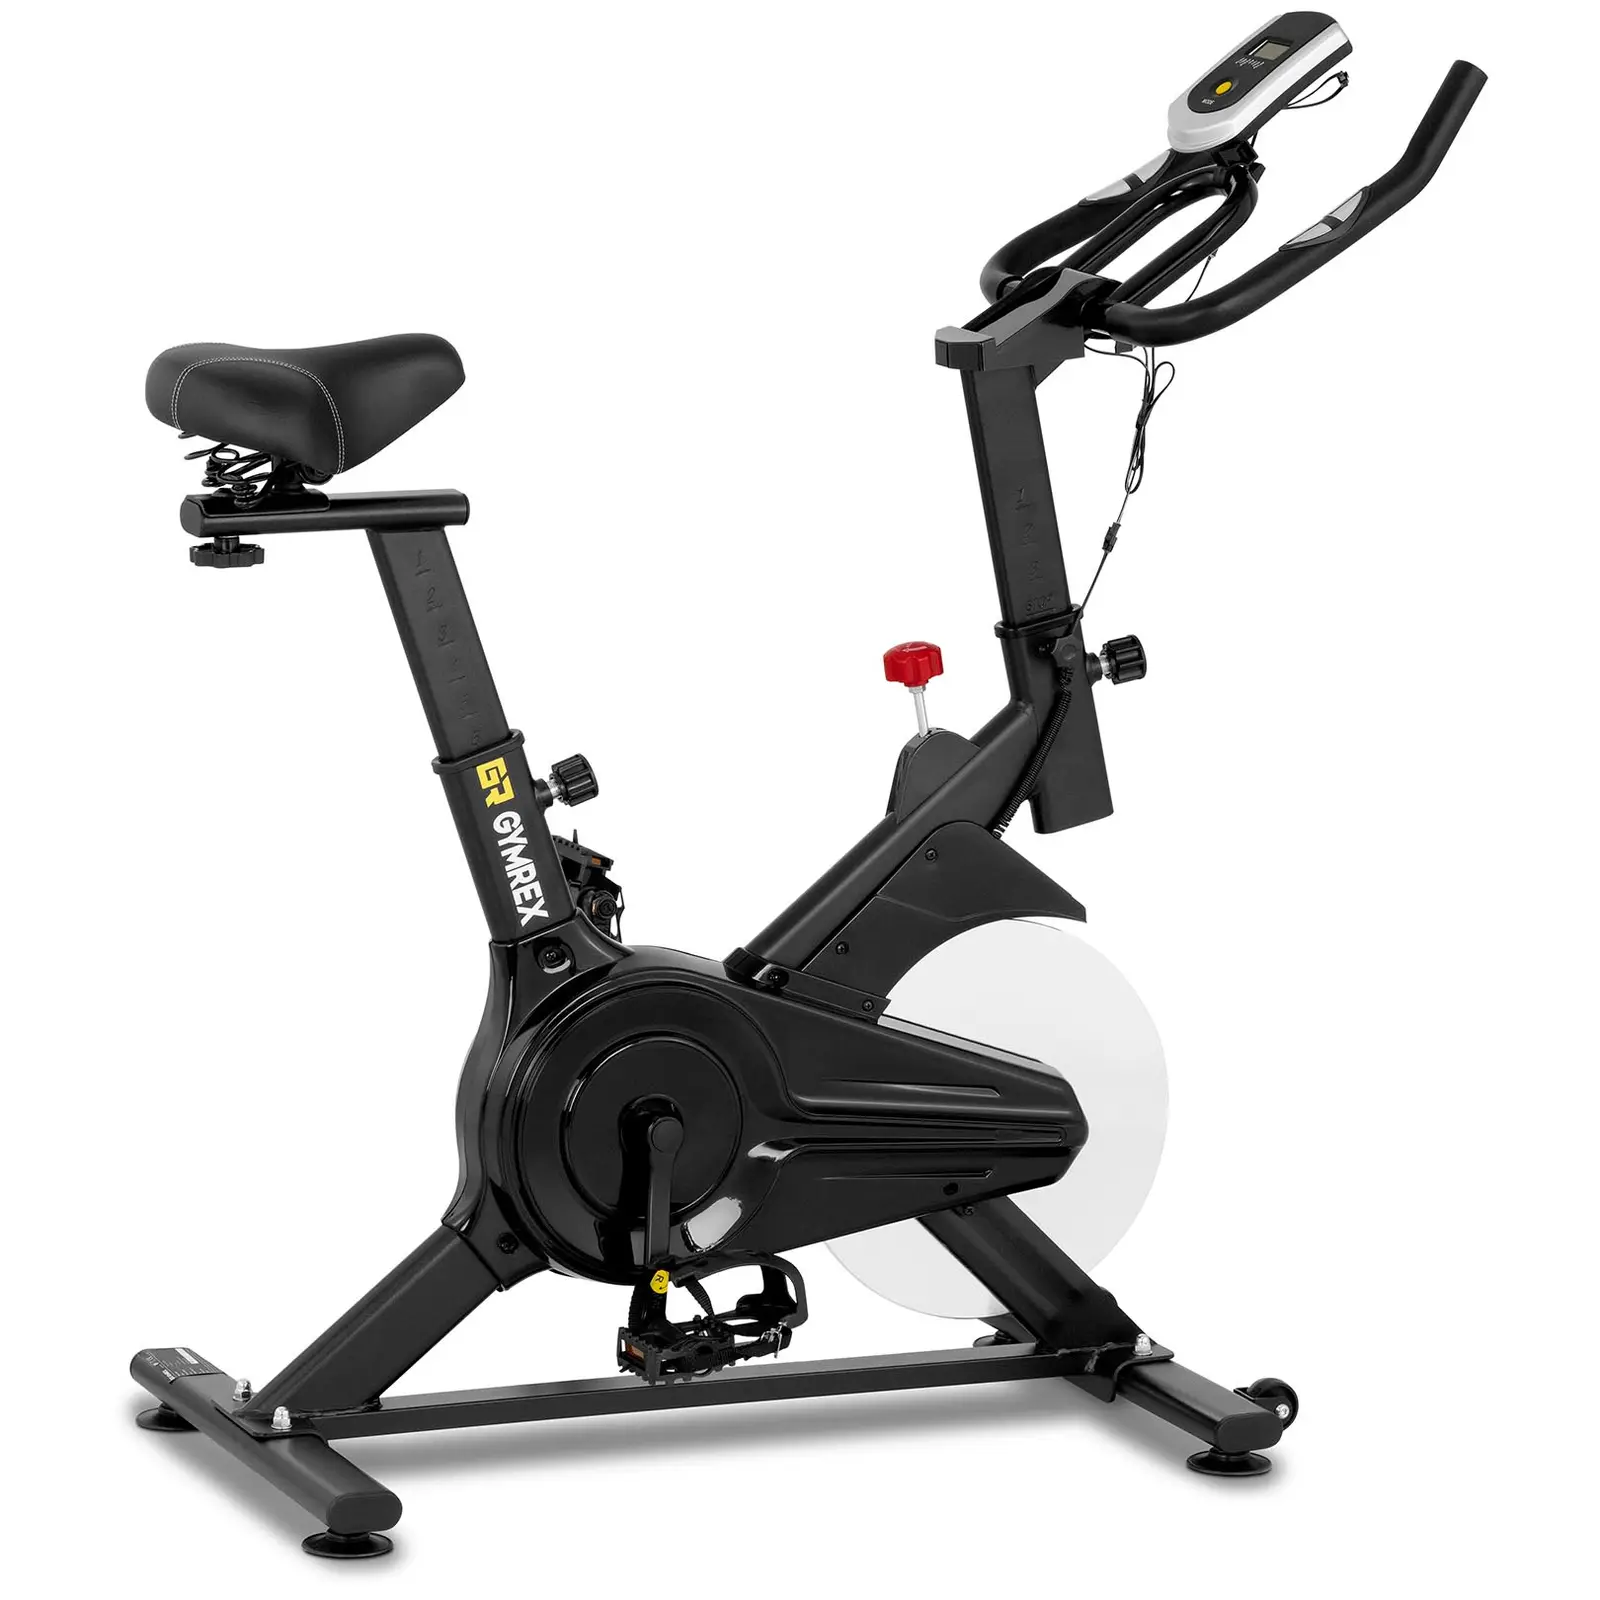 Motionscykel - Svänghjul 6 kg - Upp till 100 kg - LCD